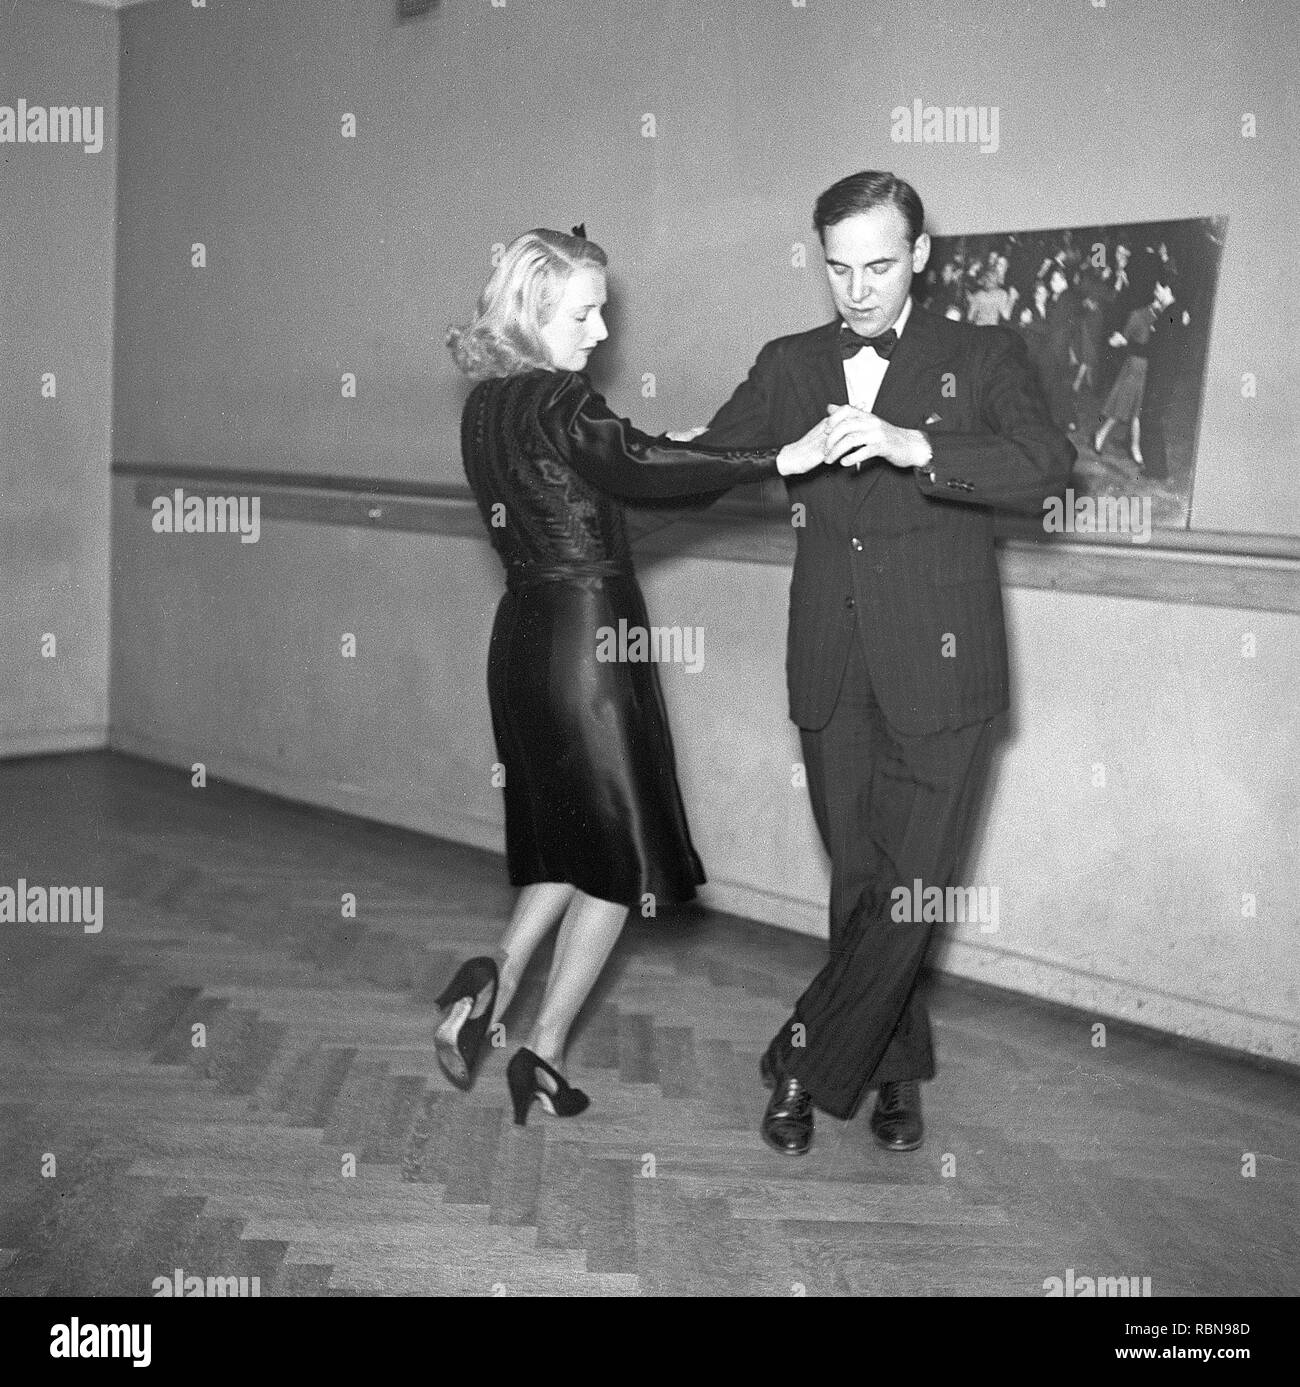 La danse dans les années 40. Couple de danseurs dans les années 40. L'élégant couple forment leurs pas de danse dans une école de danse. Kristoffersson Photo Ref B3-1. Suède 1943 Banque D'Images